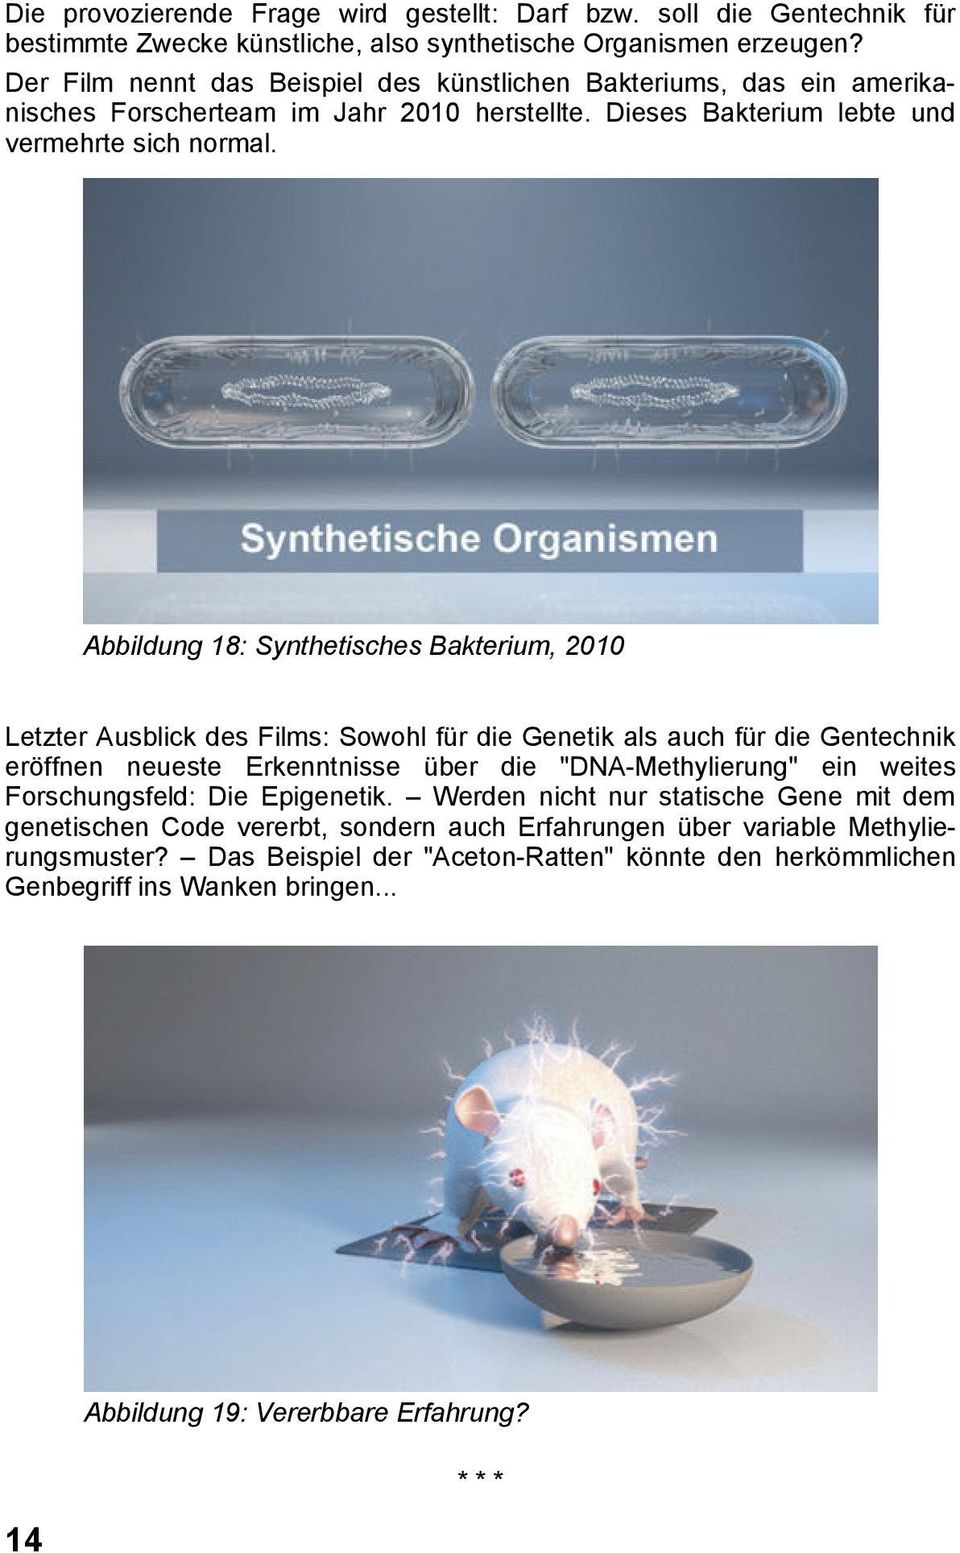 Abbildung 18: Synthetisches Bakterium, 2010 Letzter Ausblick des Films: Sowohl für die Genetik als auch für die Gentechnik eröffnen neueste Erkenntnisse über die "DNA-Methylierung" ein weites